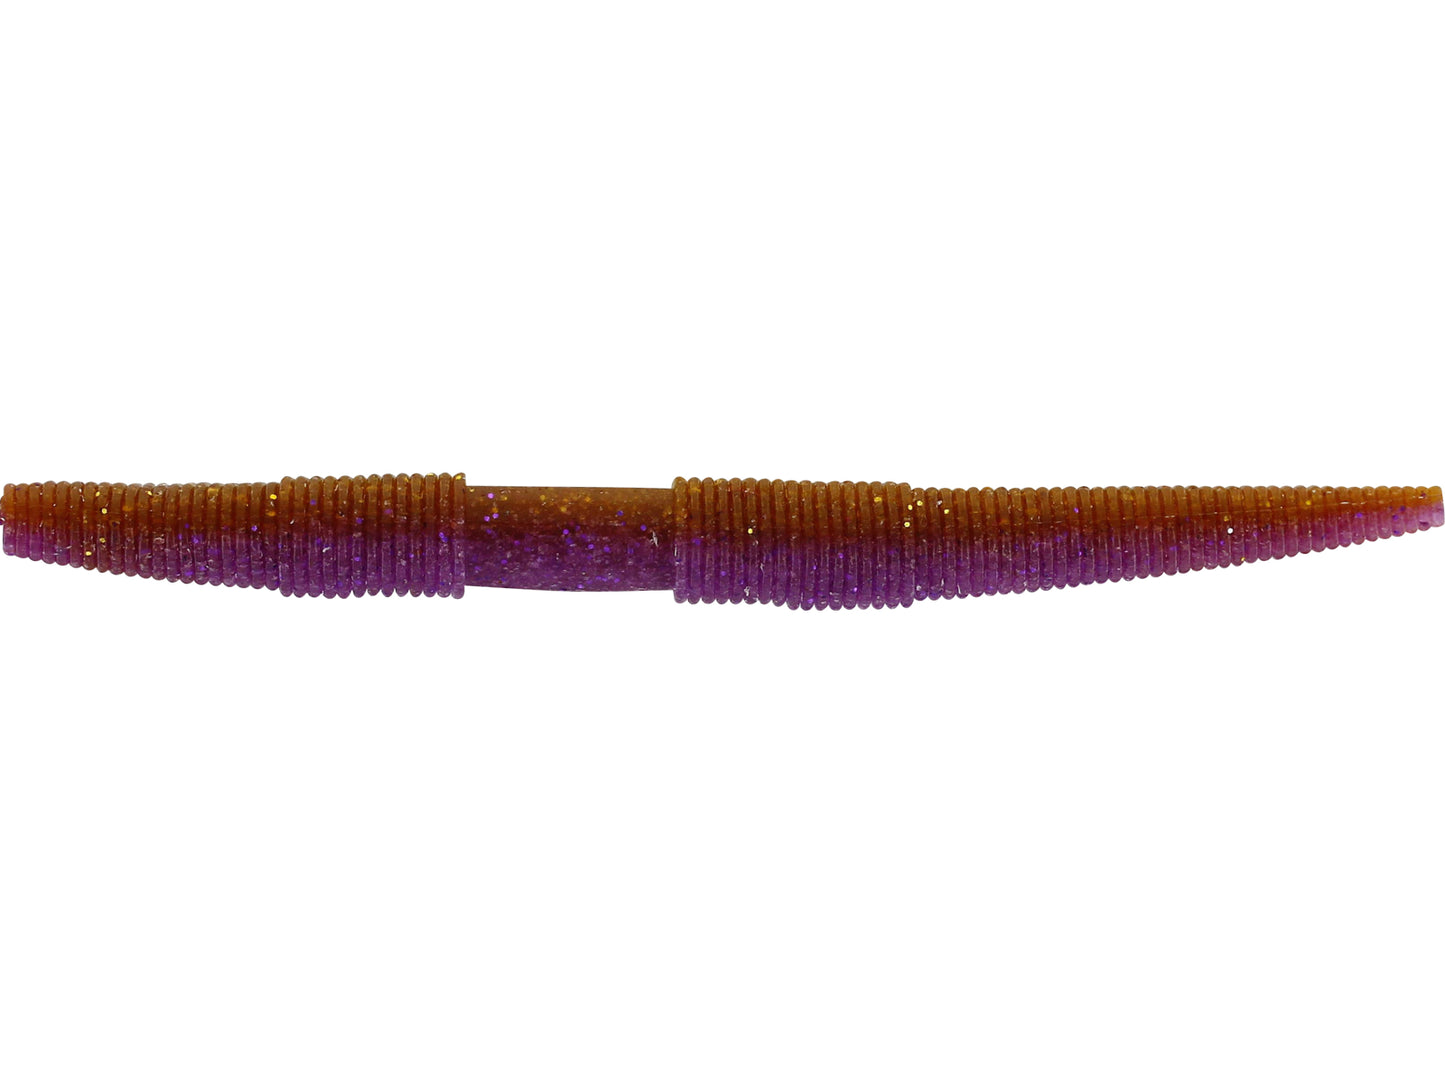 Westin Stick Worm